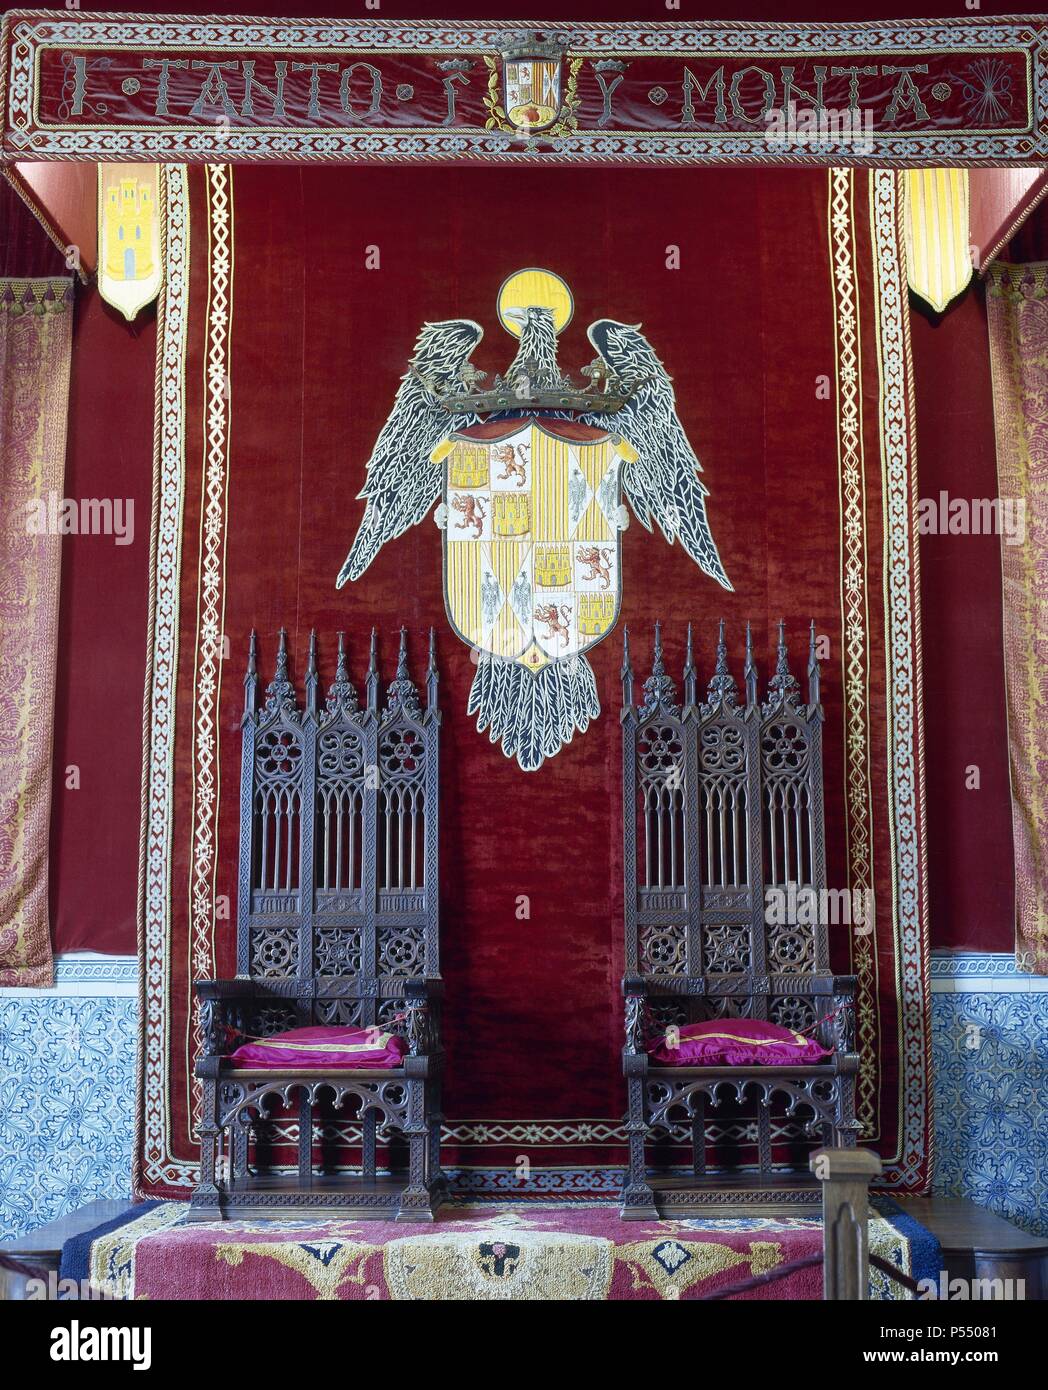 Spanien. Segovia. Der Alcazar. Burg und Residenz des Monarchen von Königreich von Kastilien. Der Saal des Thrones. Zwei Throne trägt die Wappen der katholischen Könige. Stockfoto